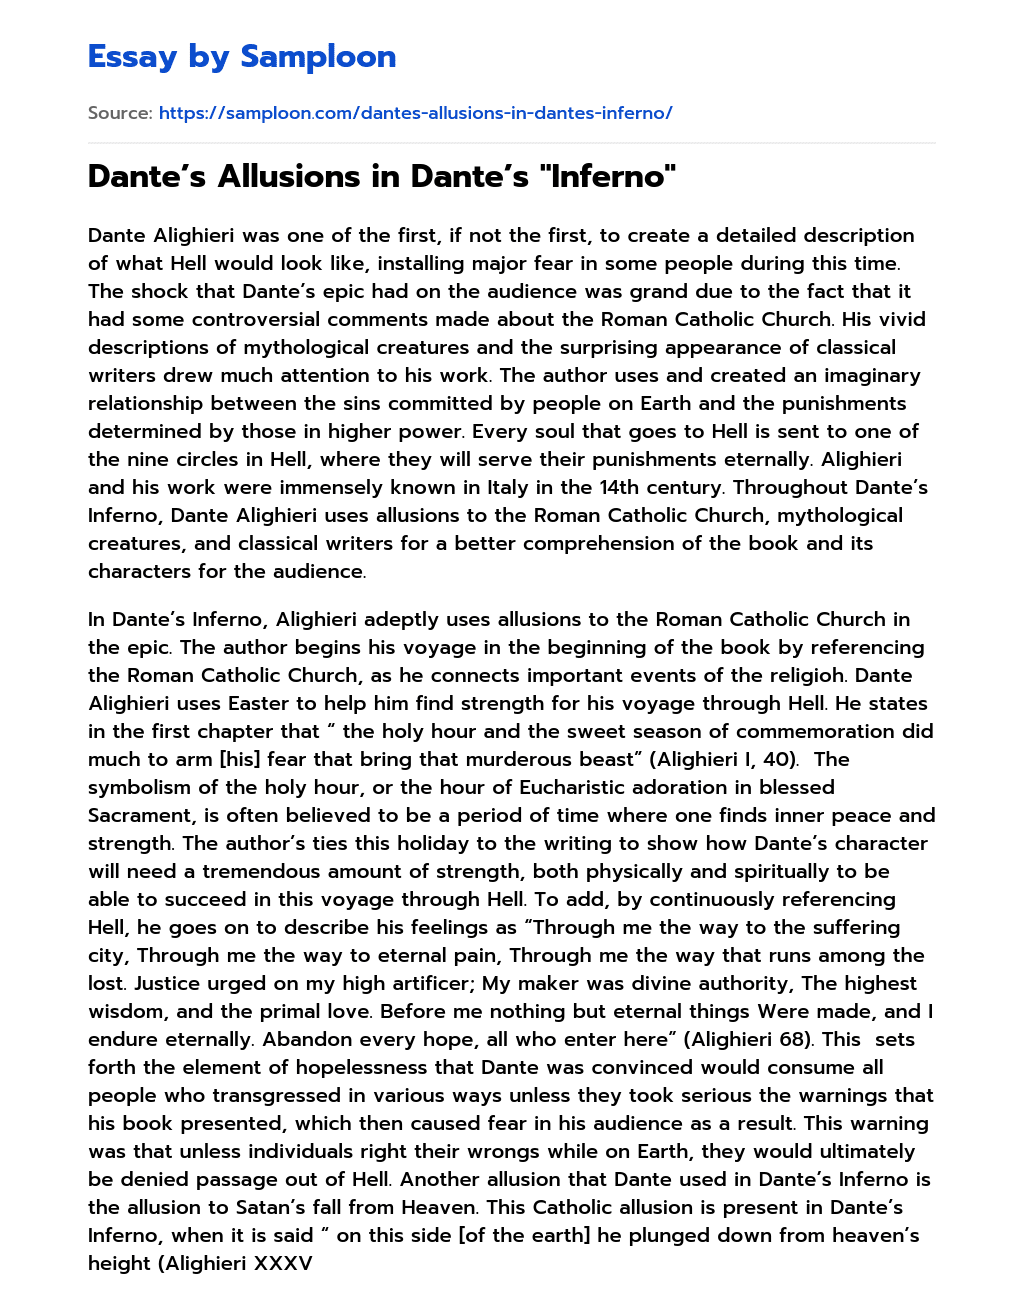 Dante’s Allusions in Dante’s “Inferno” essay